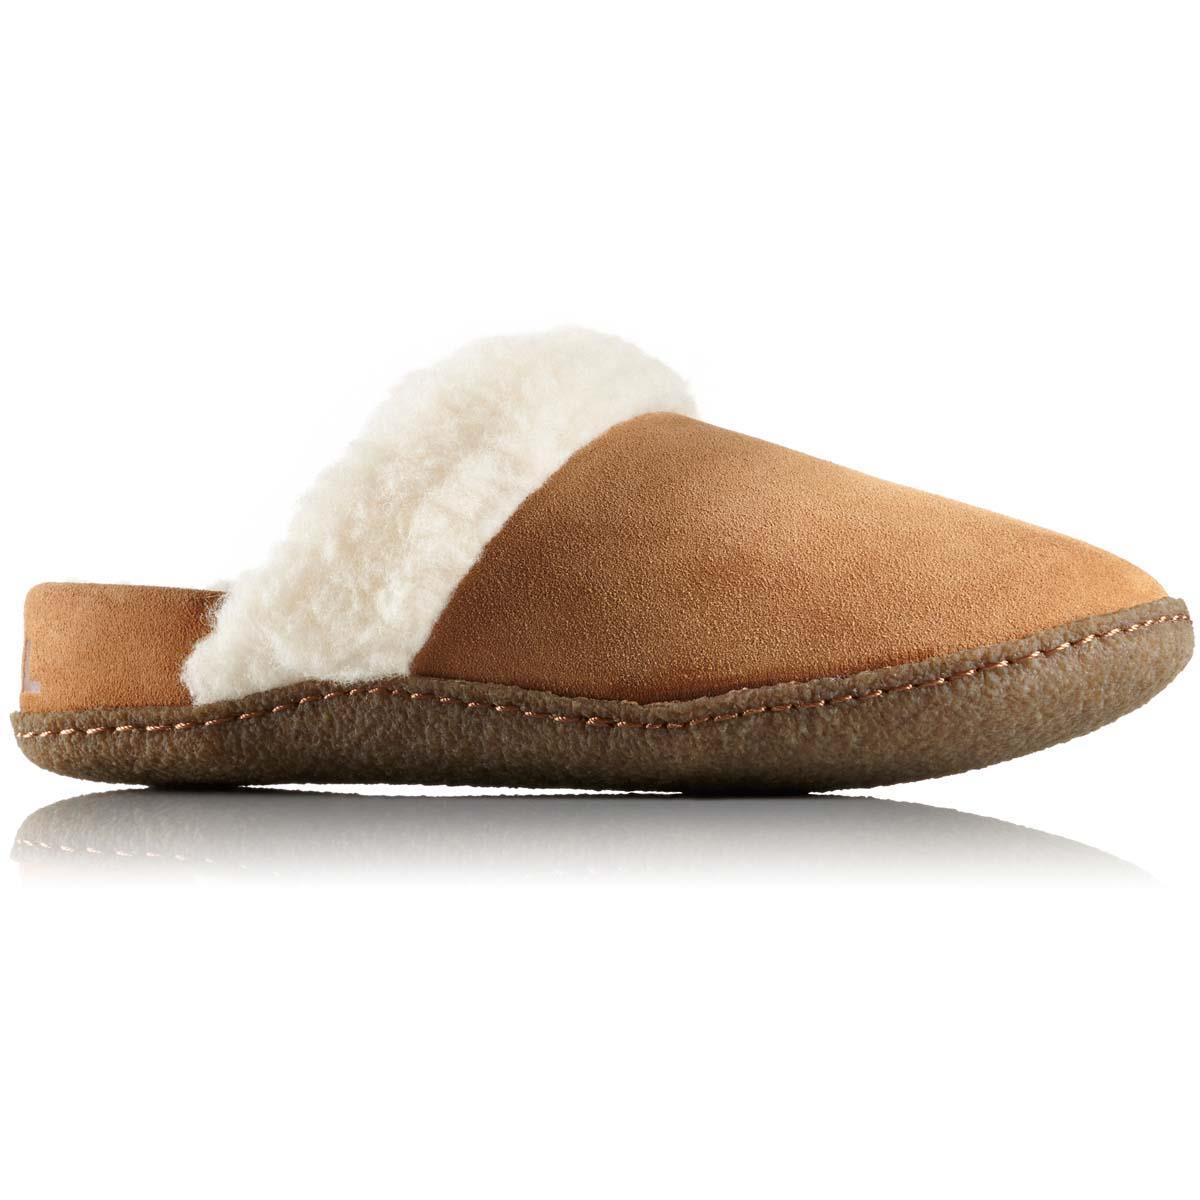 sorel house slippers